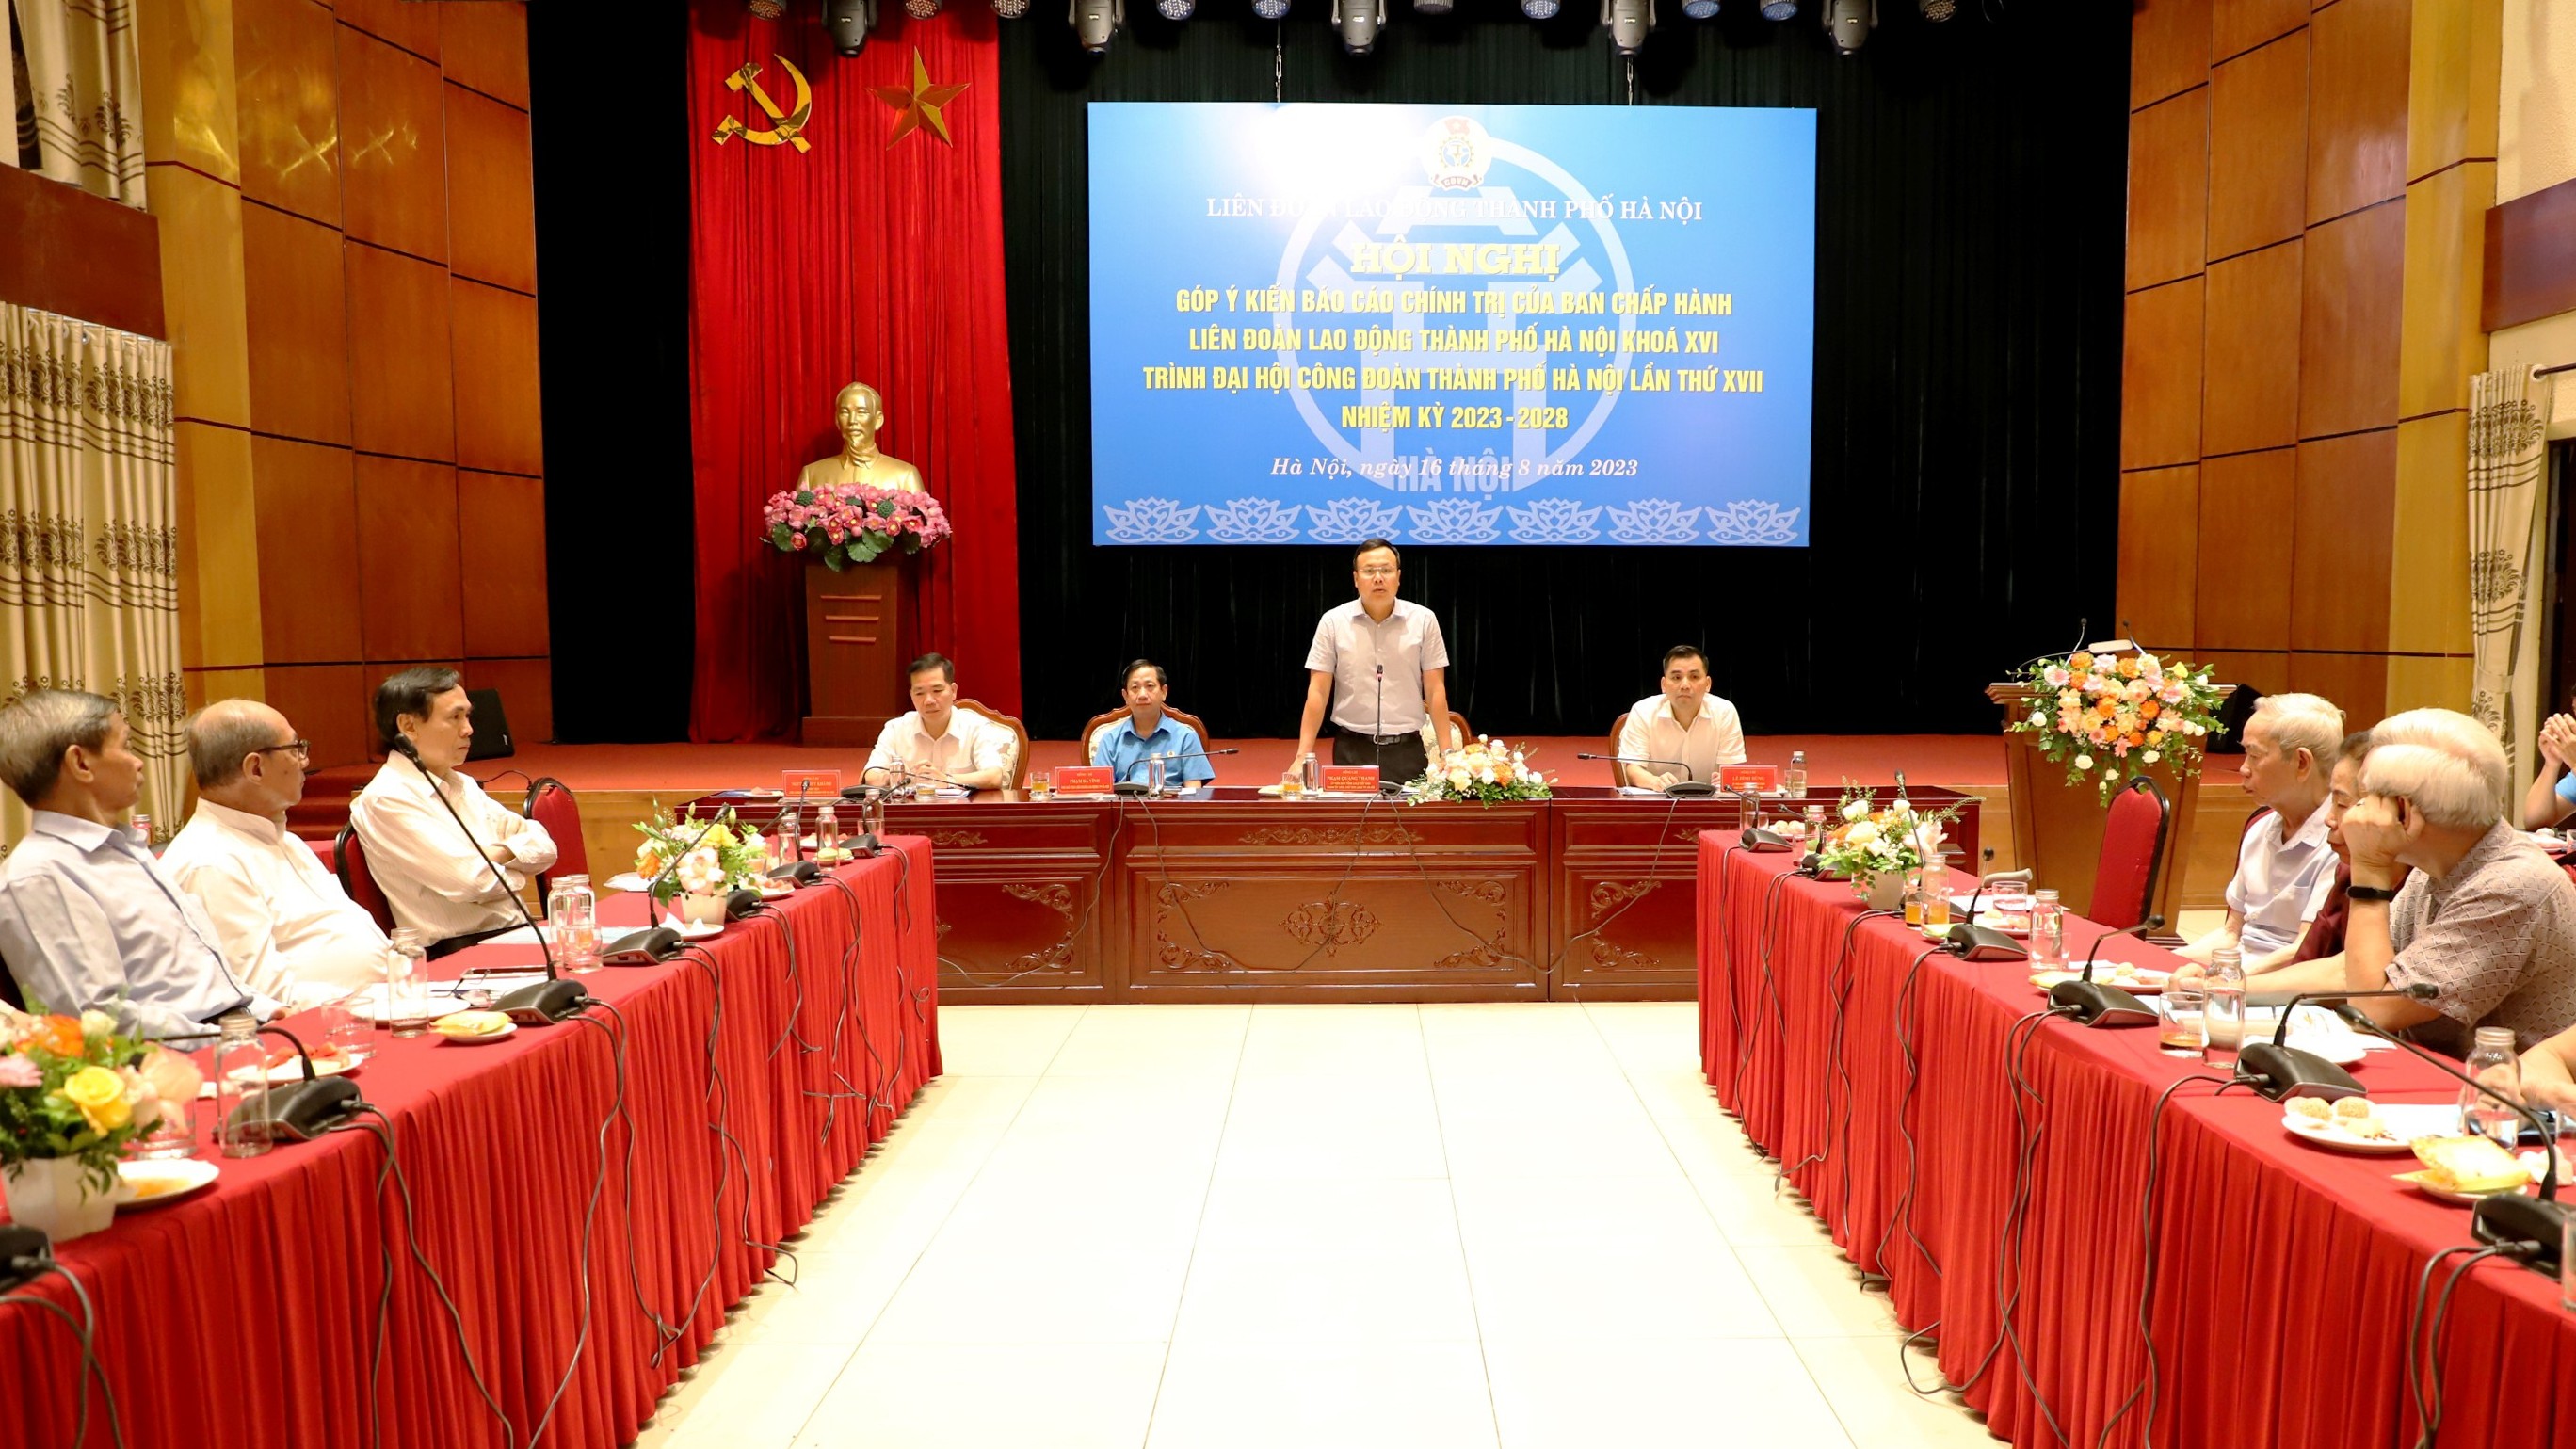 Lấy ý kiến góp ý vào dự thảo Báo cáo chính trị trình Đại hội Công đoàn thành phố Hà Nội lần thứ XVII